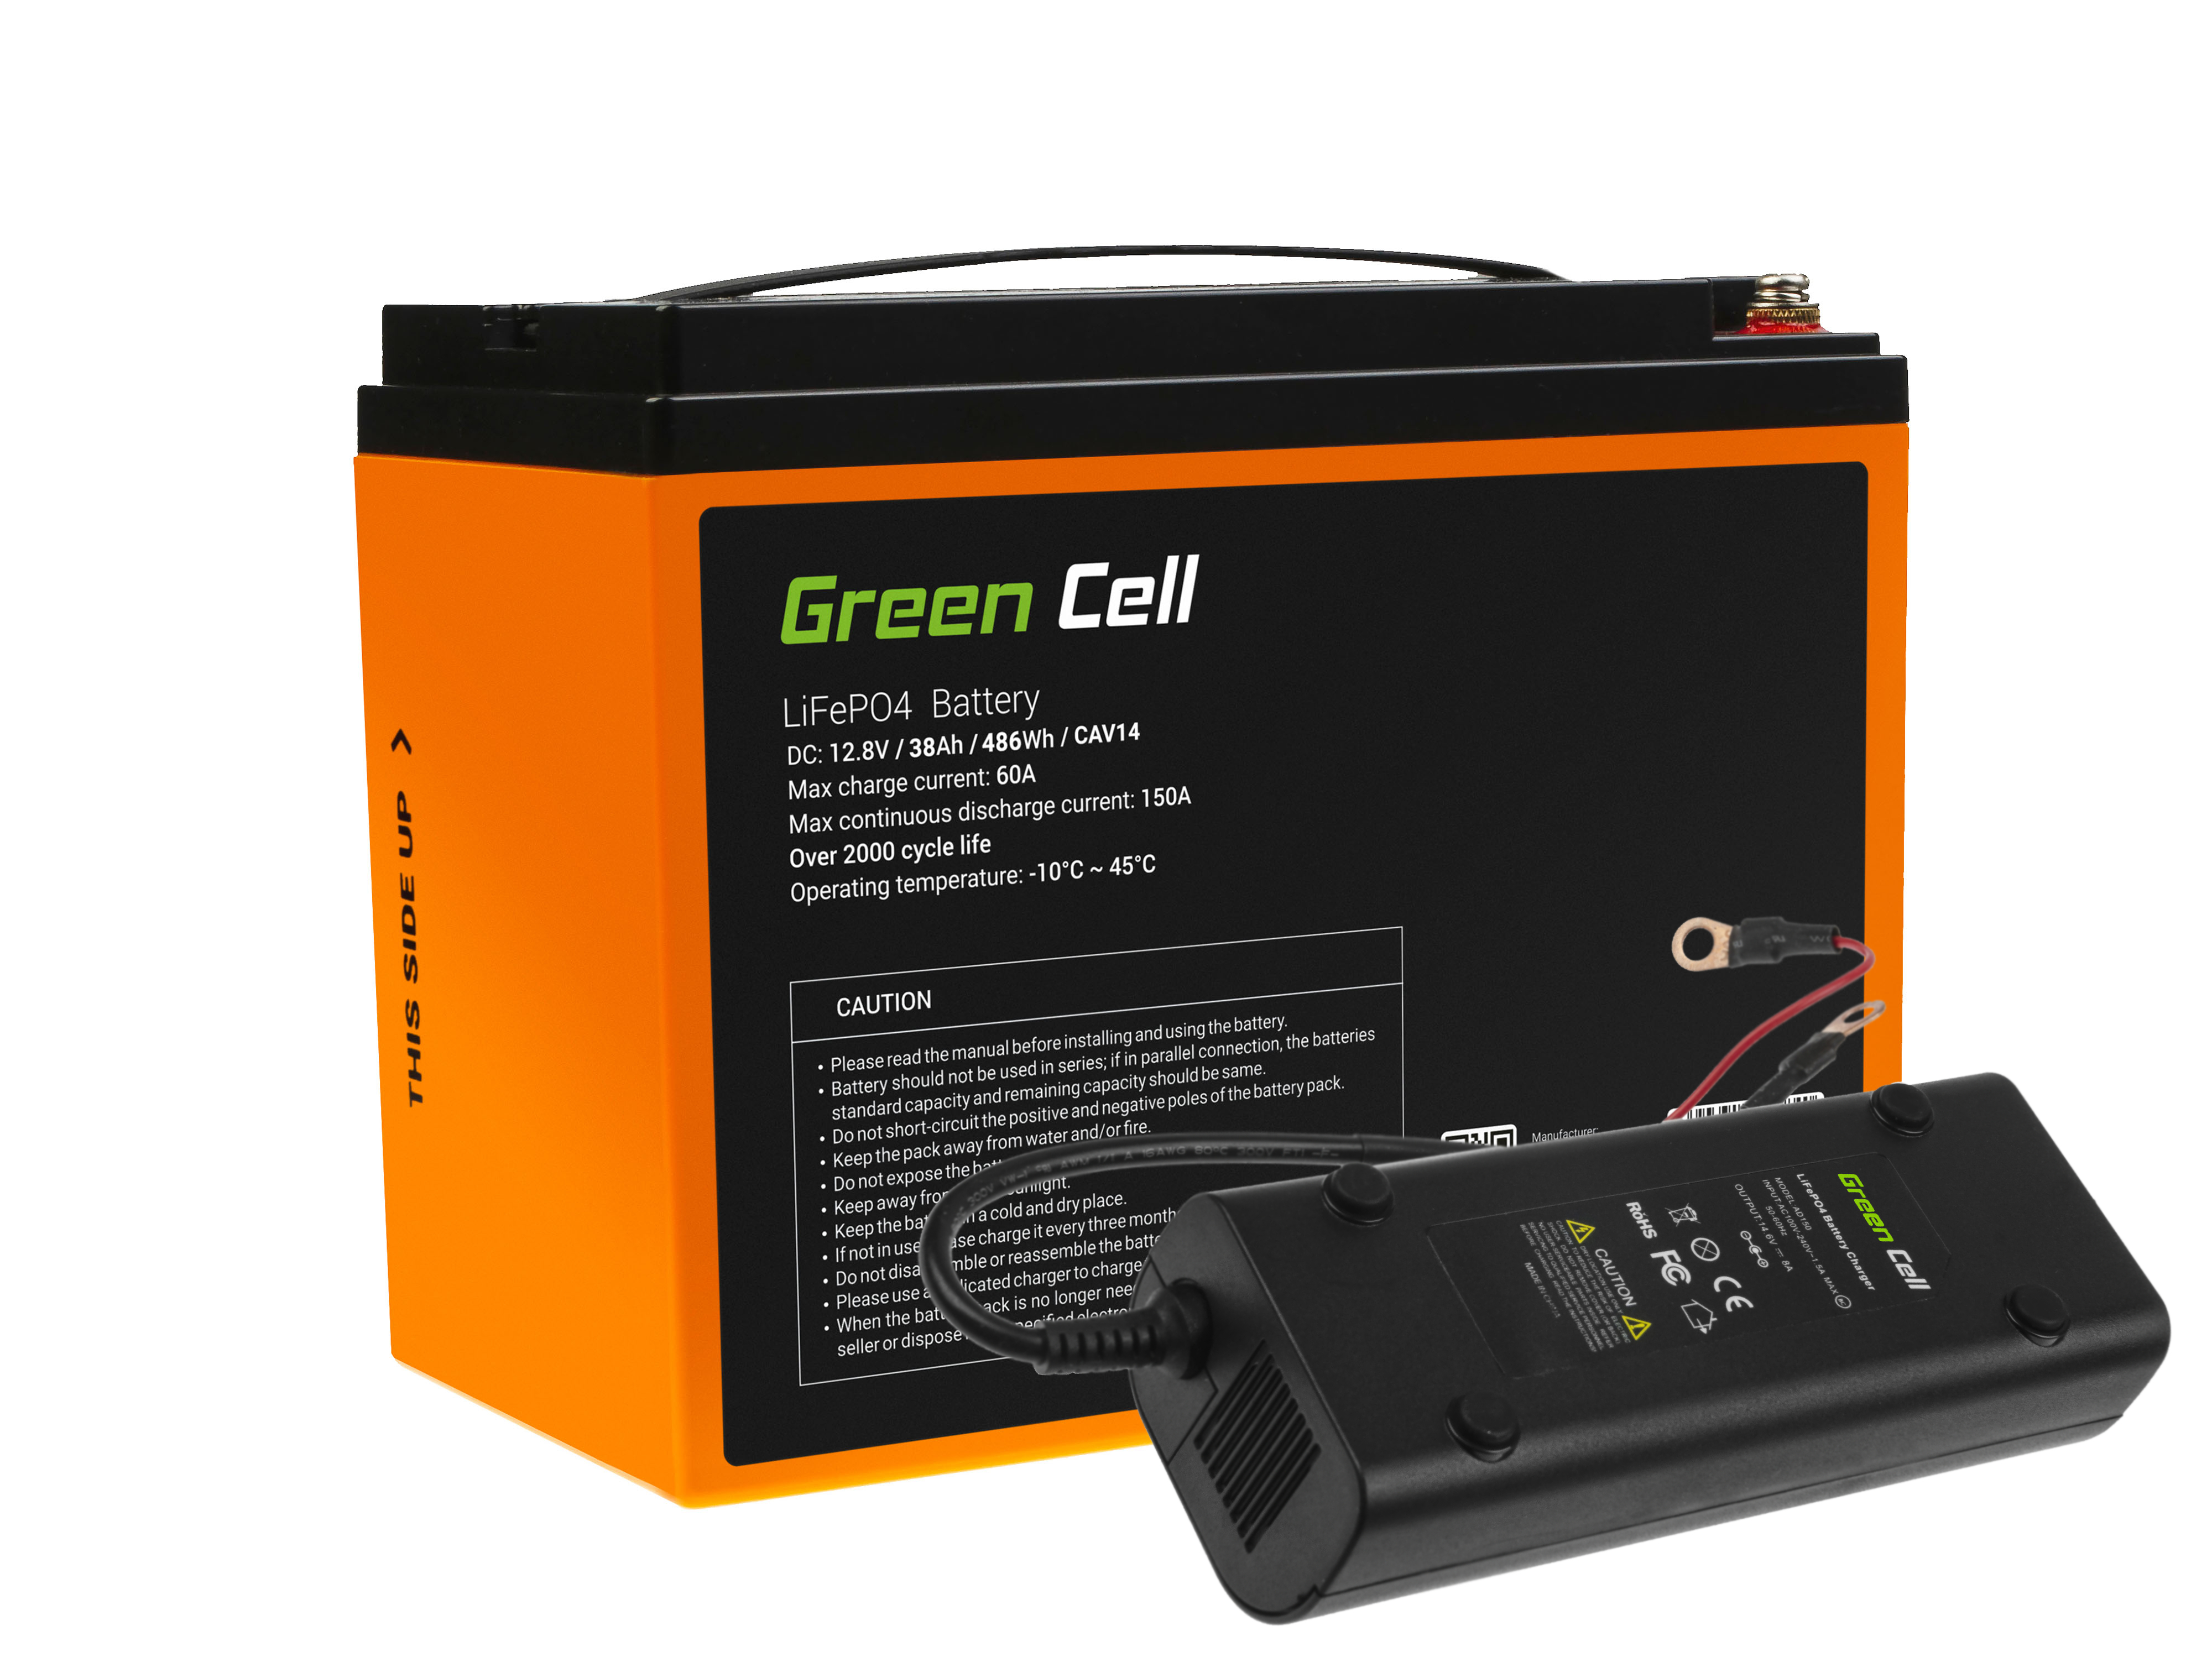 Baterie Green Cell Lithium-železo-fosfátová LiFePO4 baterie 12V 38Ah + nabíječka 8A pro solární panely, obytné automobily a lodě